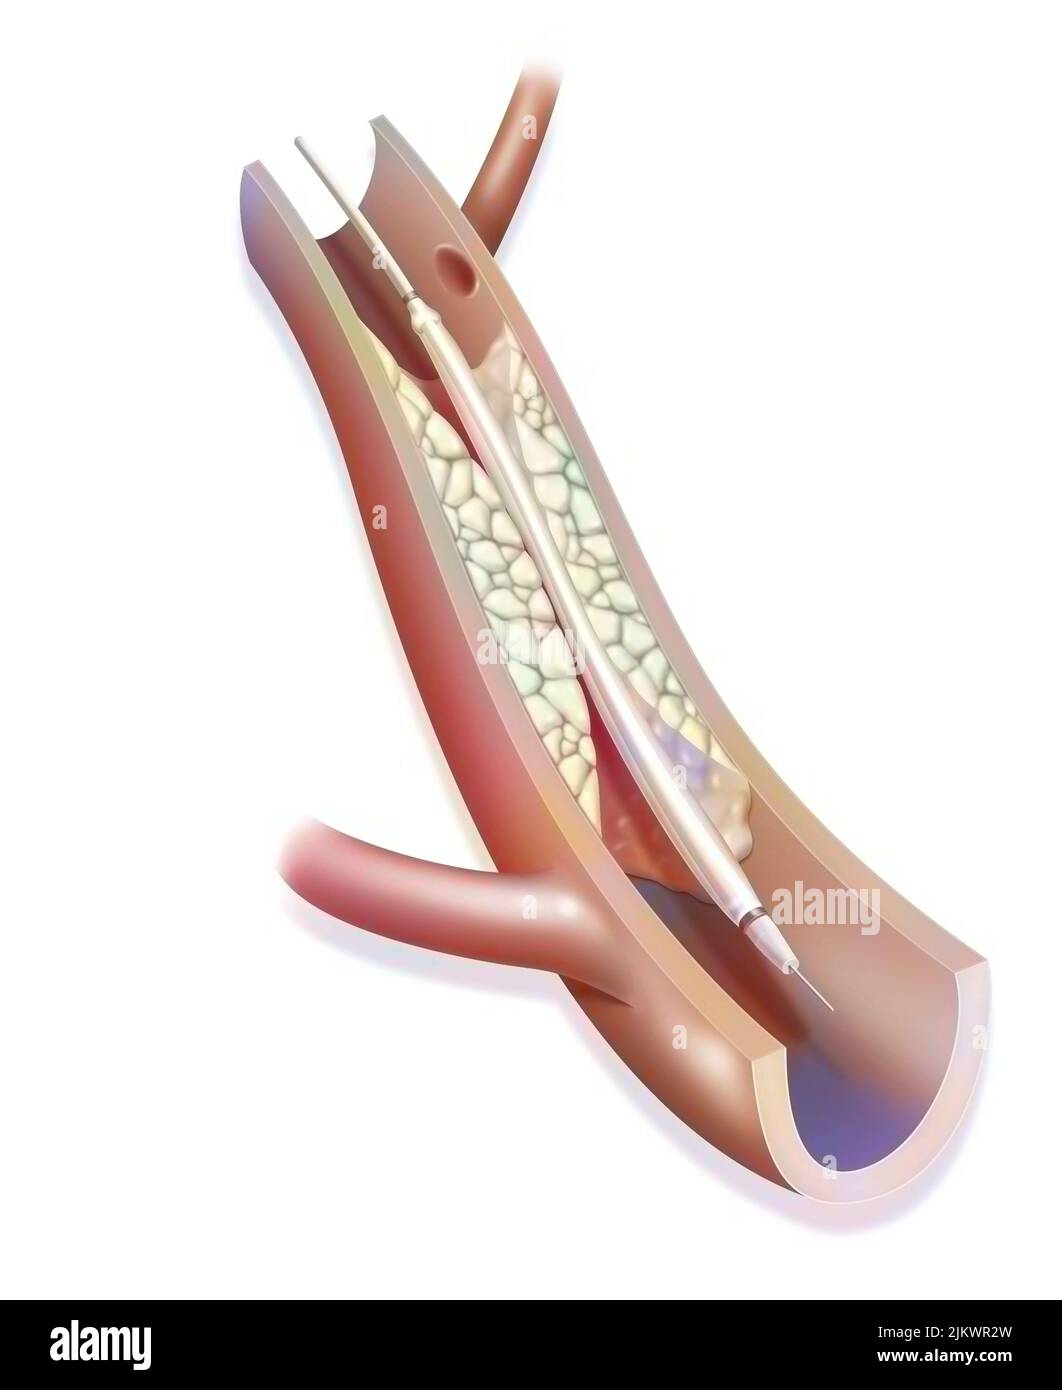 Ballonkatheter-Angioplastie: Schritt 1, Einführung eines mit einem Ballon ausgestatteten Katheters in eine blockierte Arterie. Stockfoto